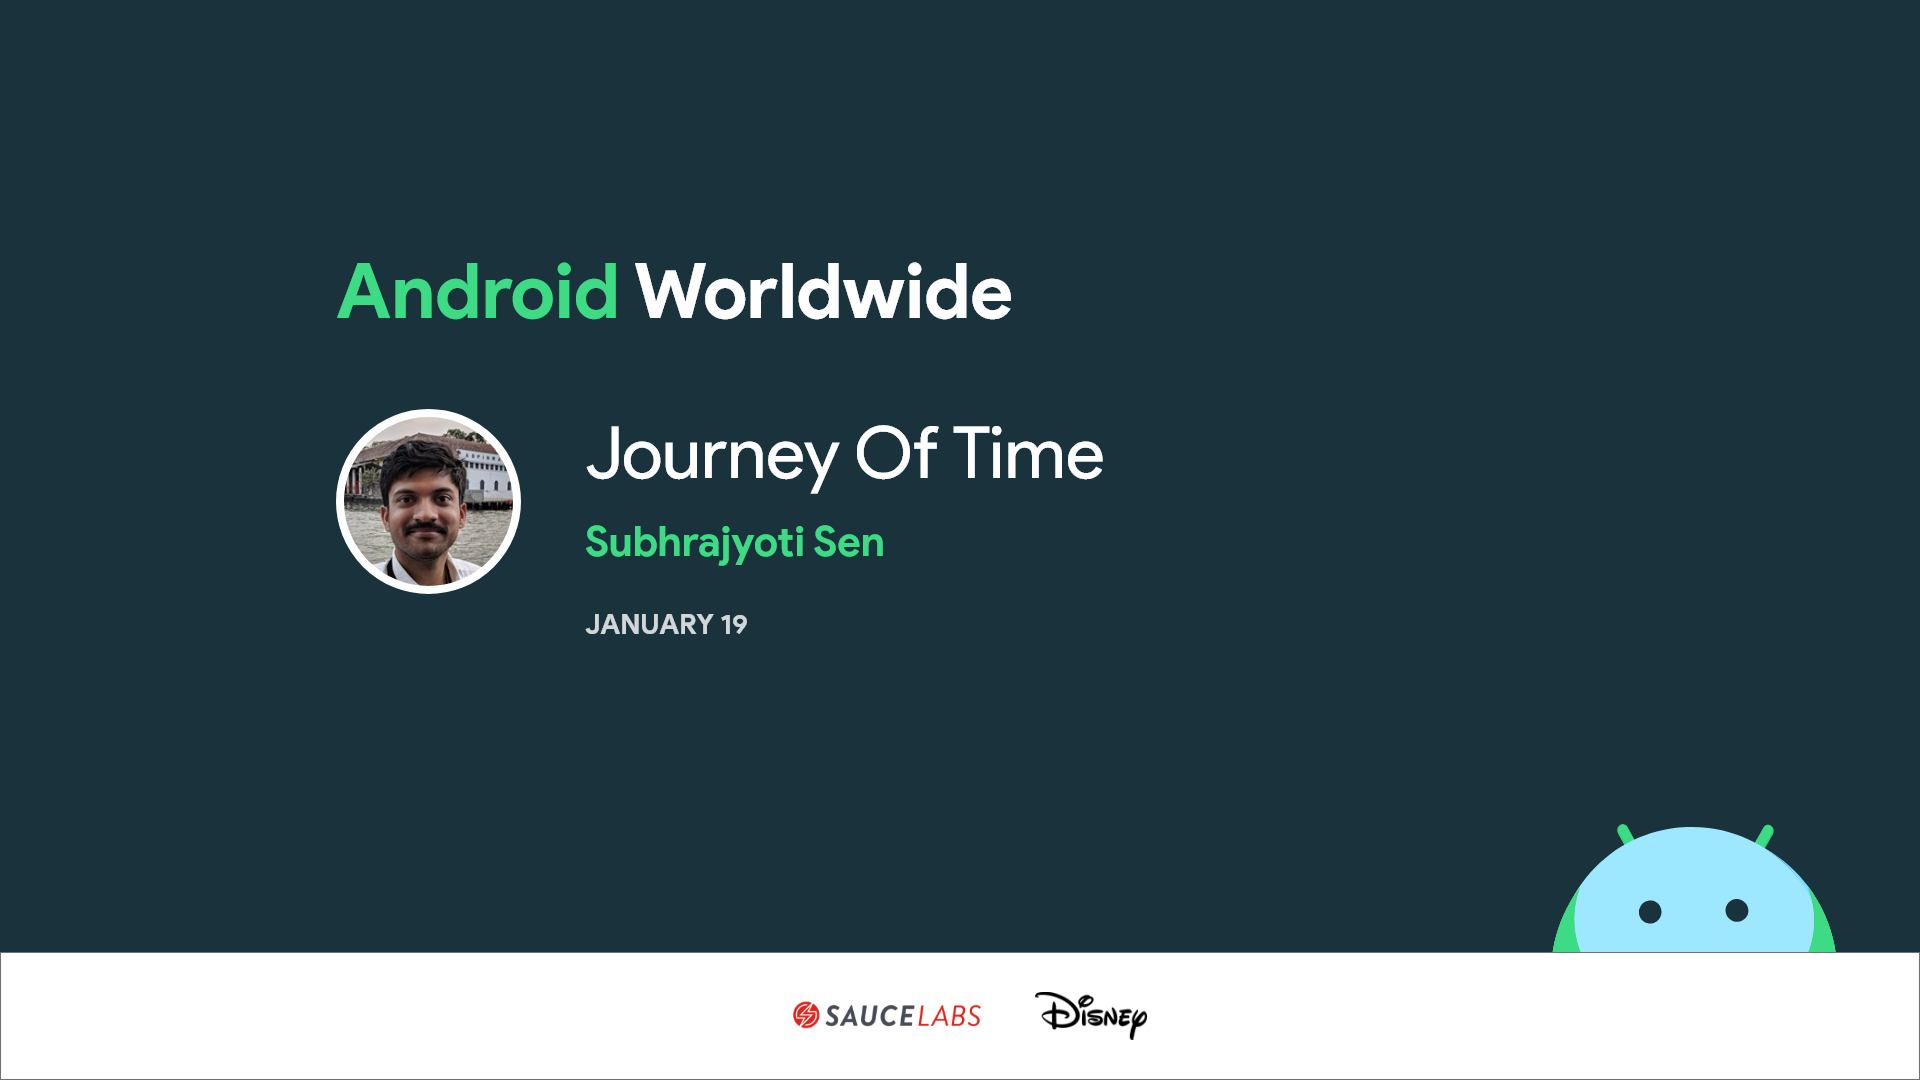 Subrajyoti Sen talks about Joda time and Java calendar APIs